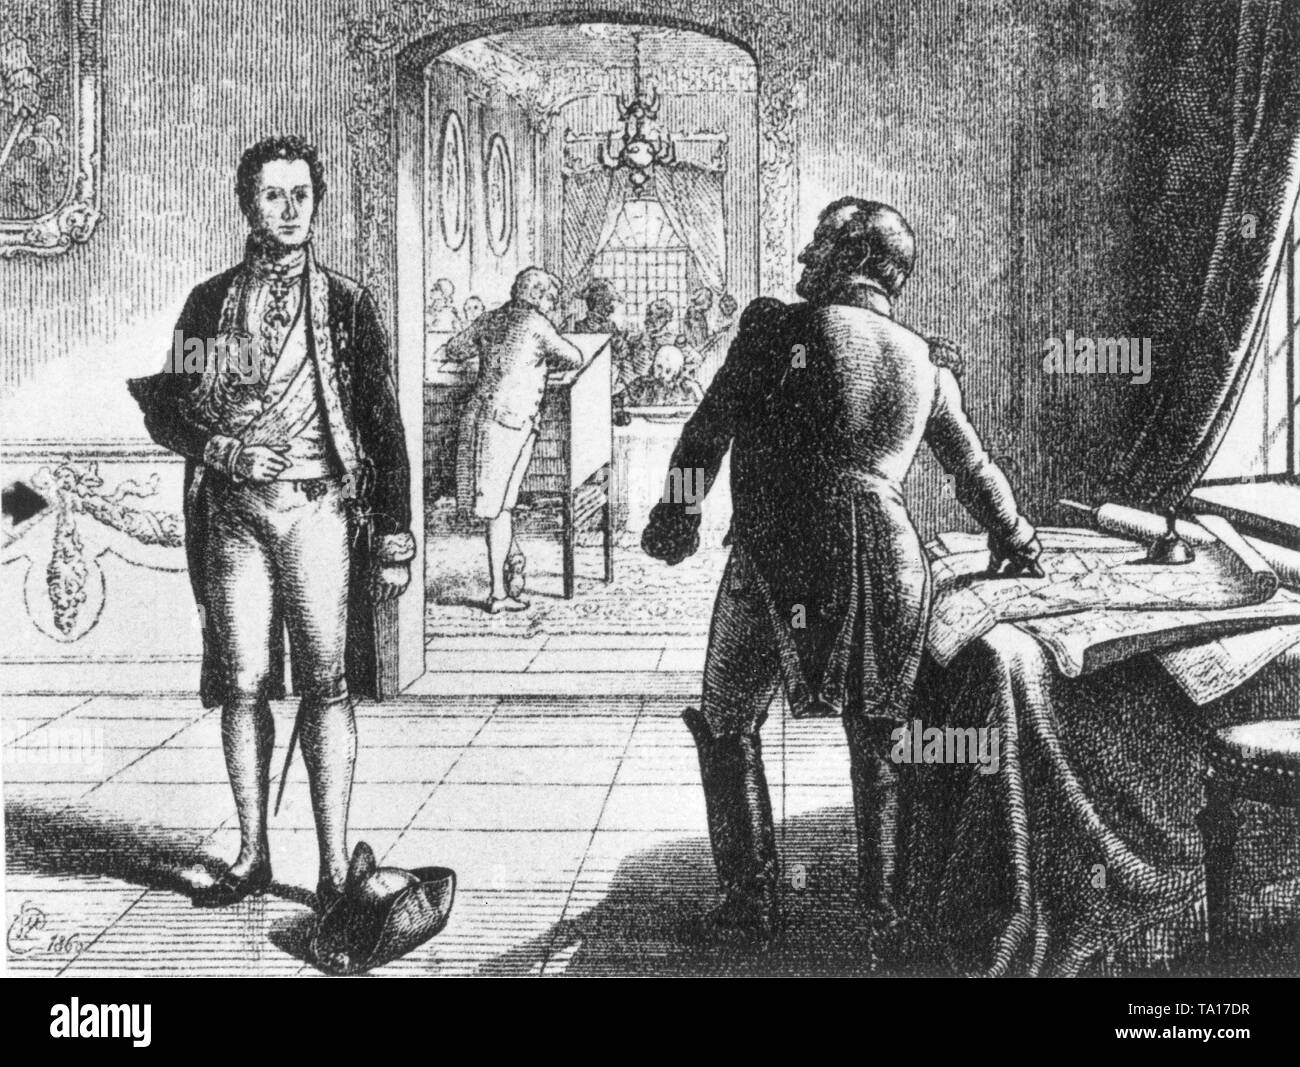 Fürst Klemens Wenzel von Metternich, ein österreichischer Politiker und Napoleon I. während der Verhandlungen Umgang mit Krieg oder Frieden in Europa am 26.06.1813. Napoleon war so begeistert, dass er seinen Hut auf den Boden warf. Die Verhandlungen sind gescheitert. Stockfoto